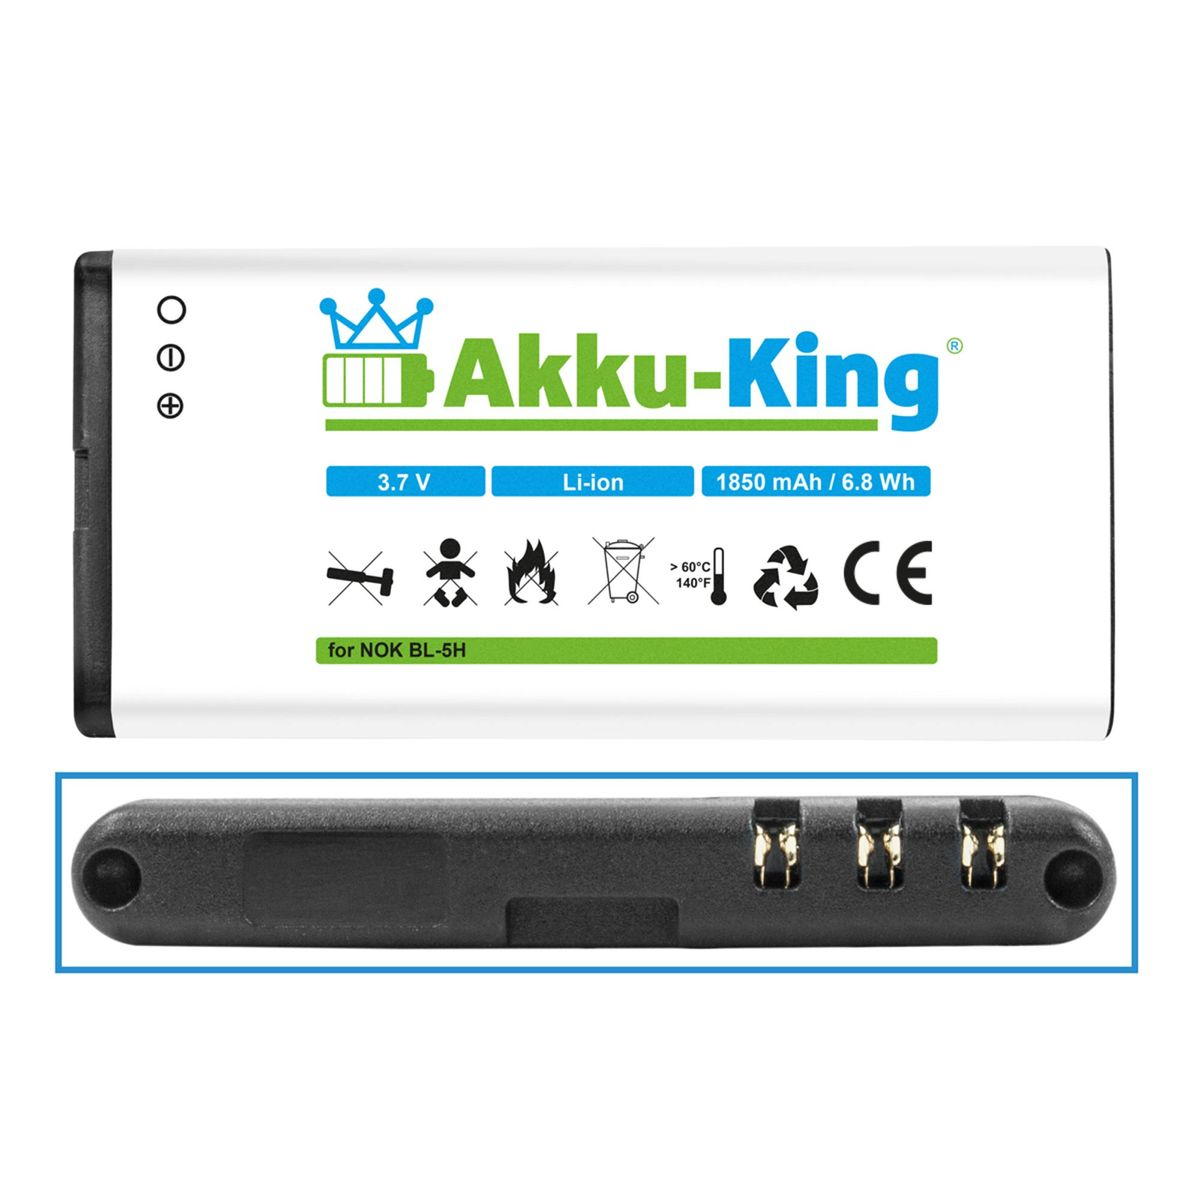 3.7 Li-Ion mit Akku 1850mAh BL-5H kompatibel Handy-Akku, AKKU-KING Volt, Nokia